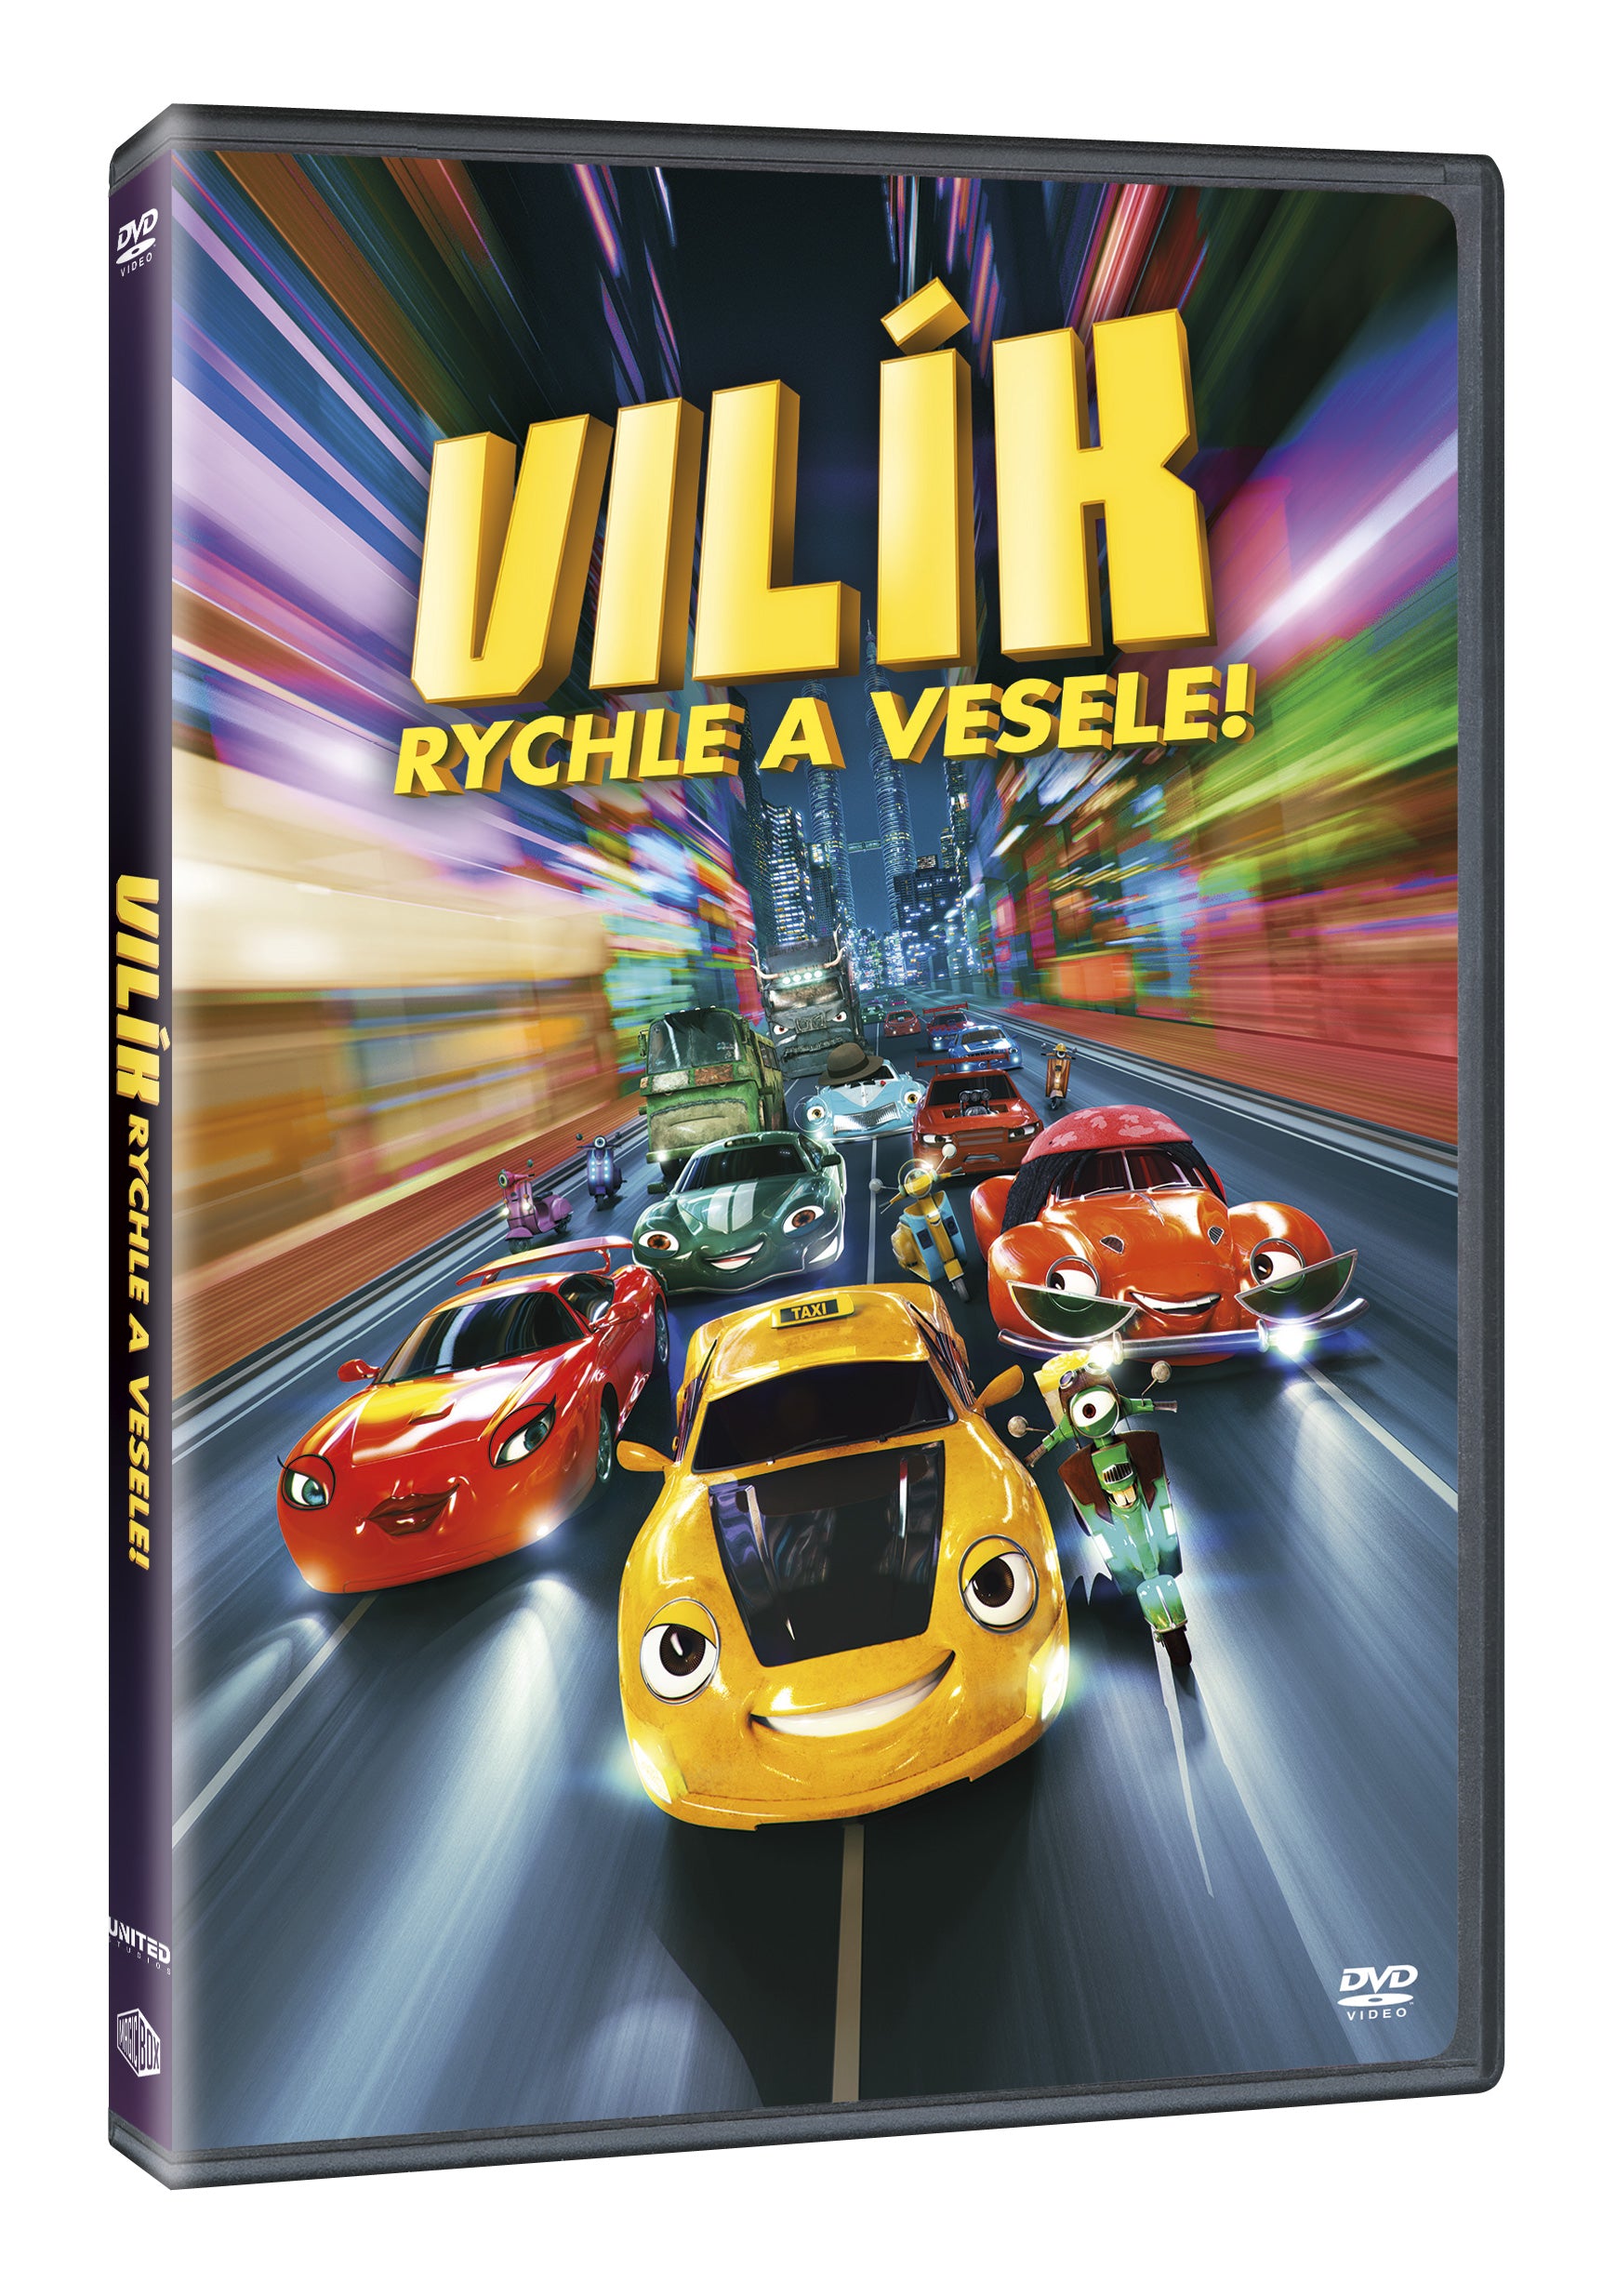 Vilik: Rychle a vesele DVD / Wheely